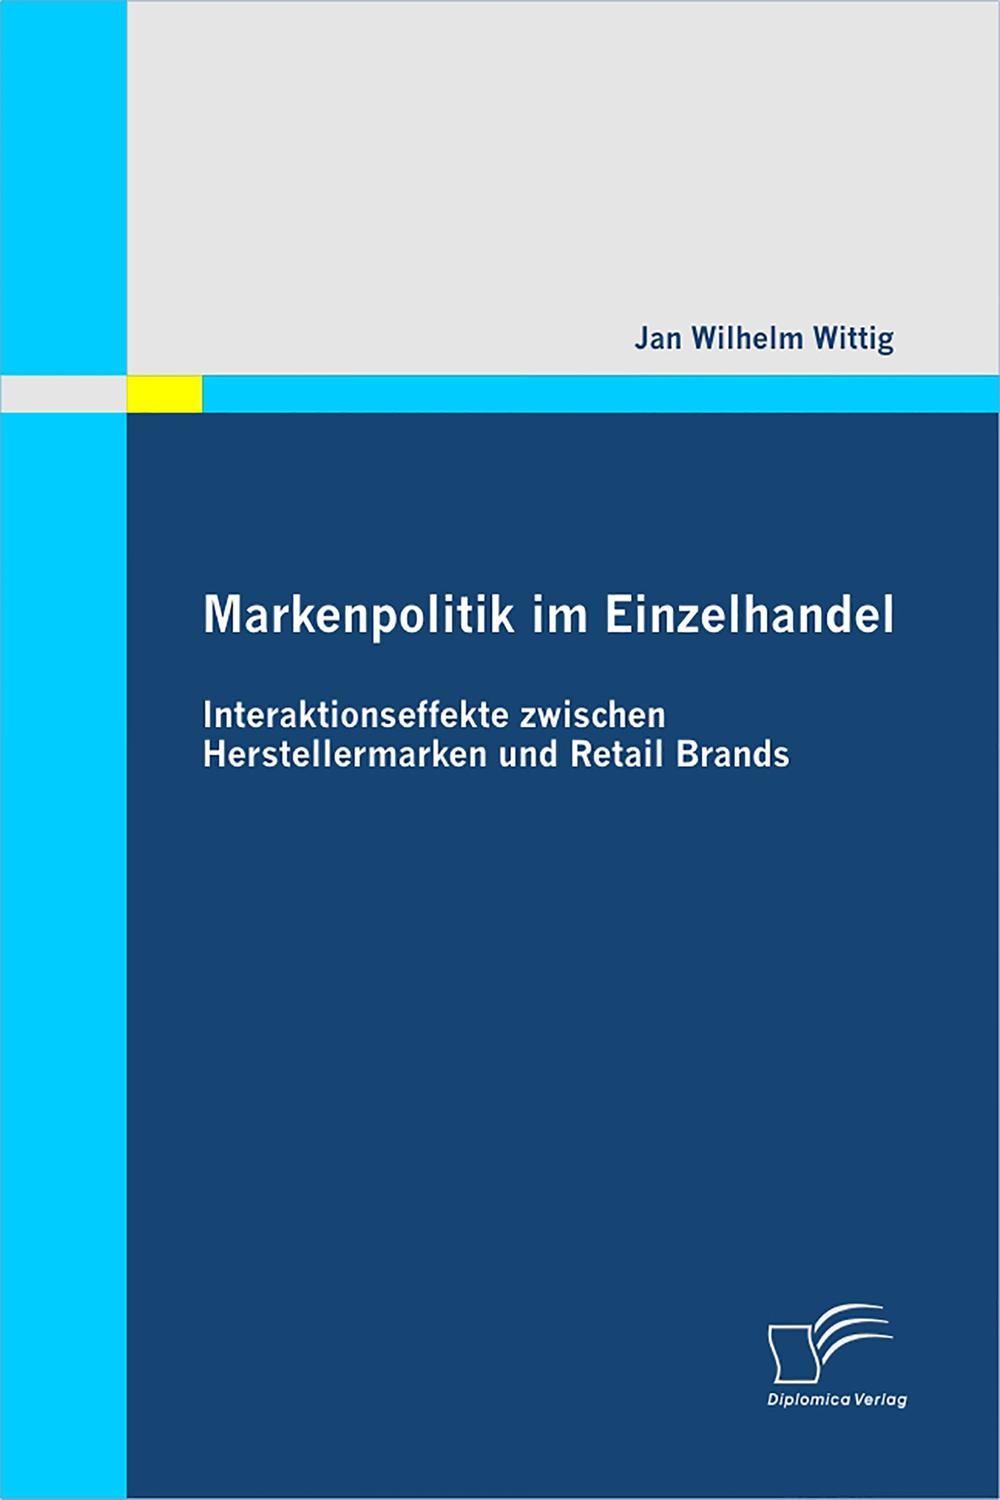 Markenpolitik im Einzelhandel: Interaktionseffekte zwischen Herstellermarken und Retail Brands - Jan Wilhelm Wittig